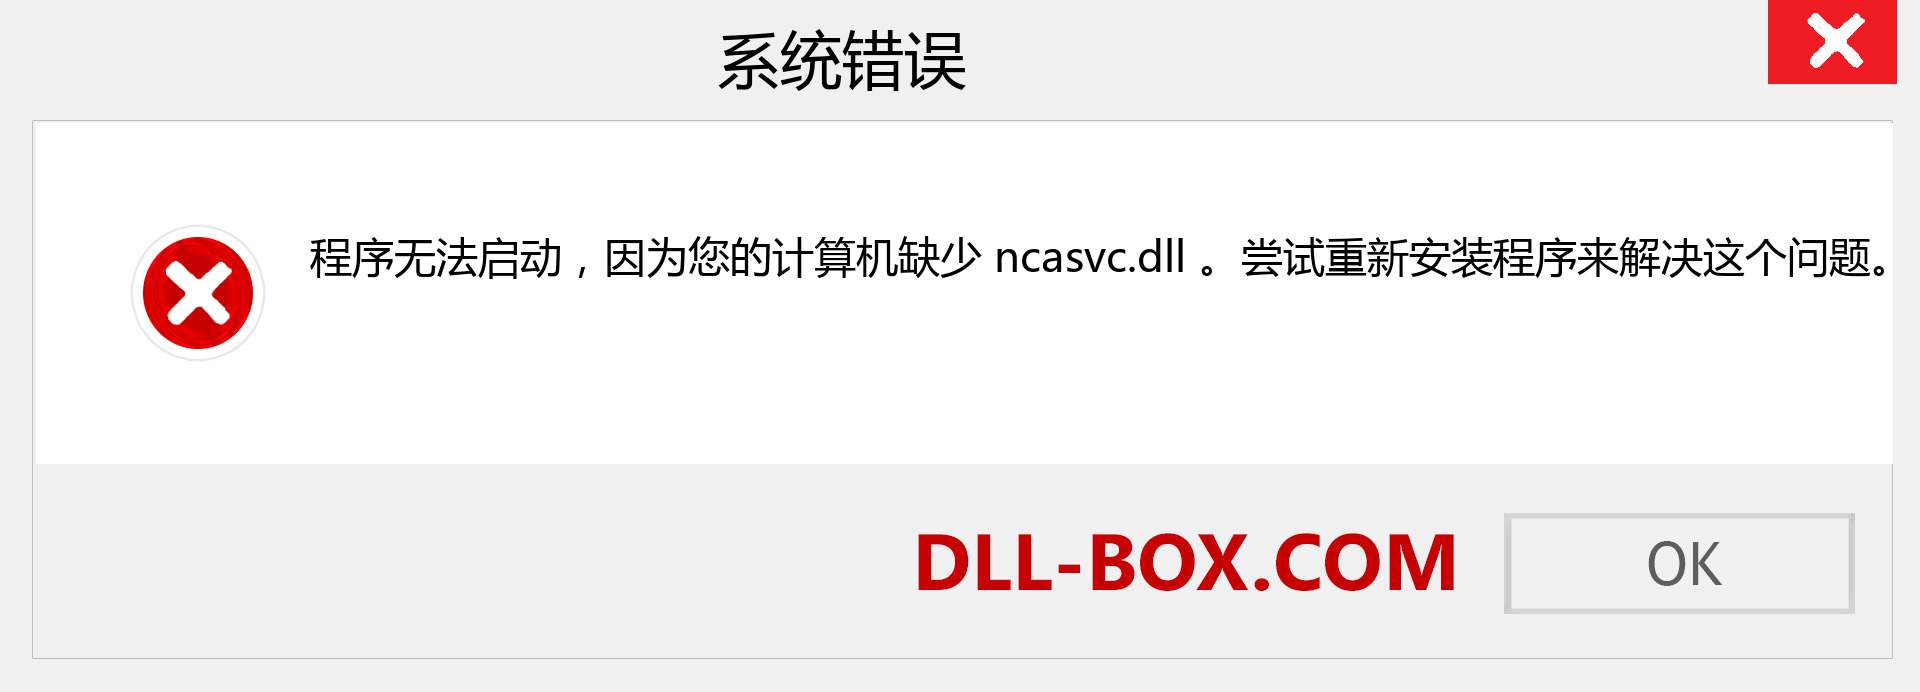 ncasvc.dll 文件丢失？。 适用于 Windows 7、8、10 的下载 - 修复 Windows、照片、图像上的 ncasvc dll 丢失错误